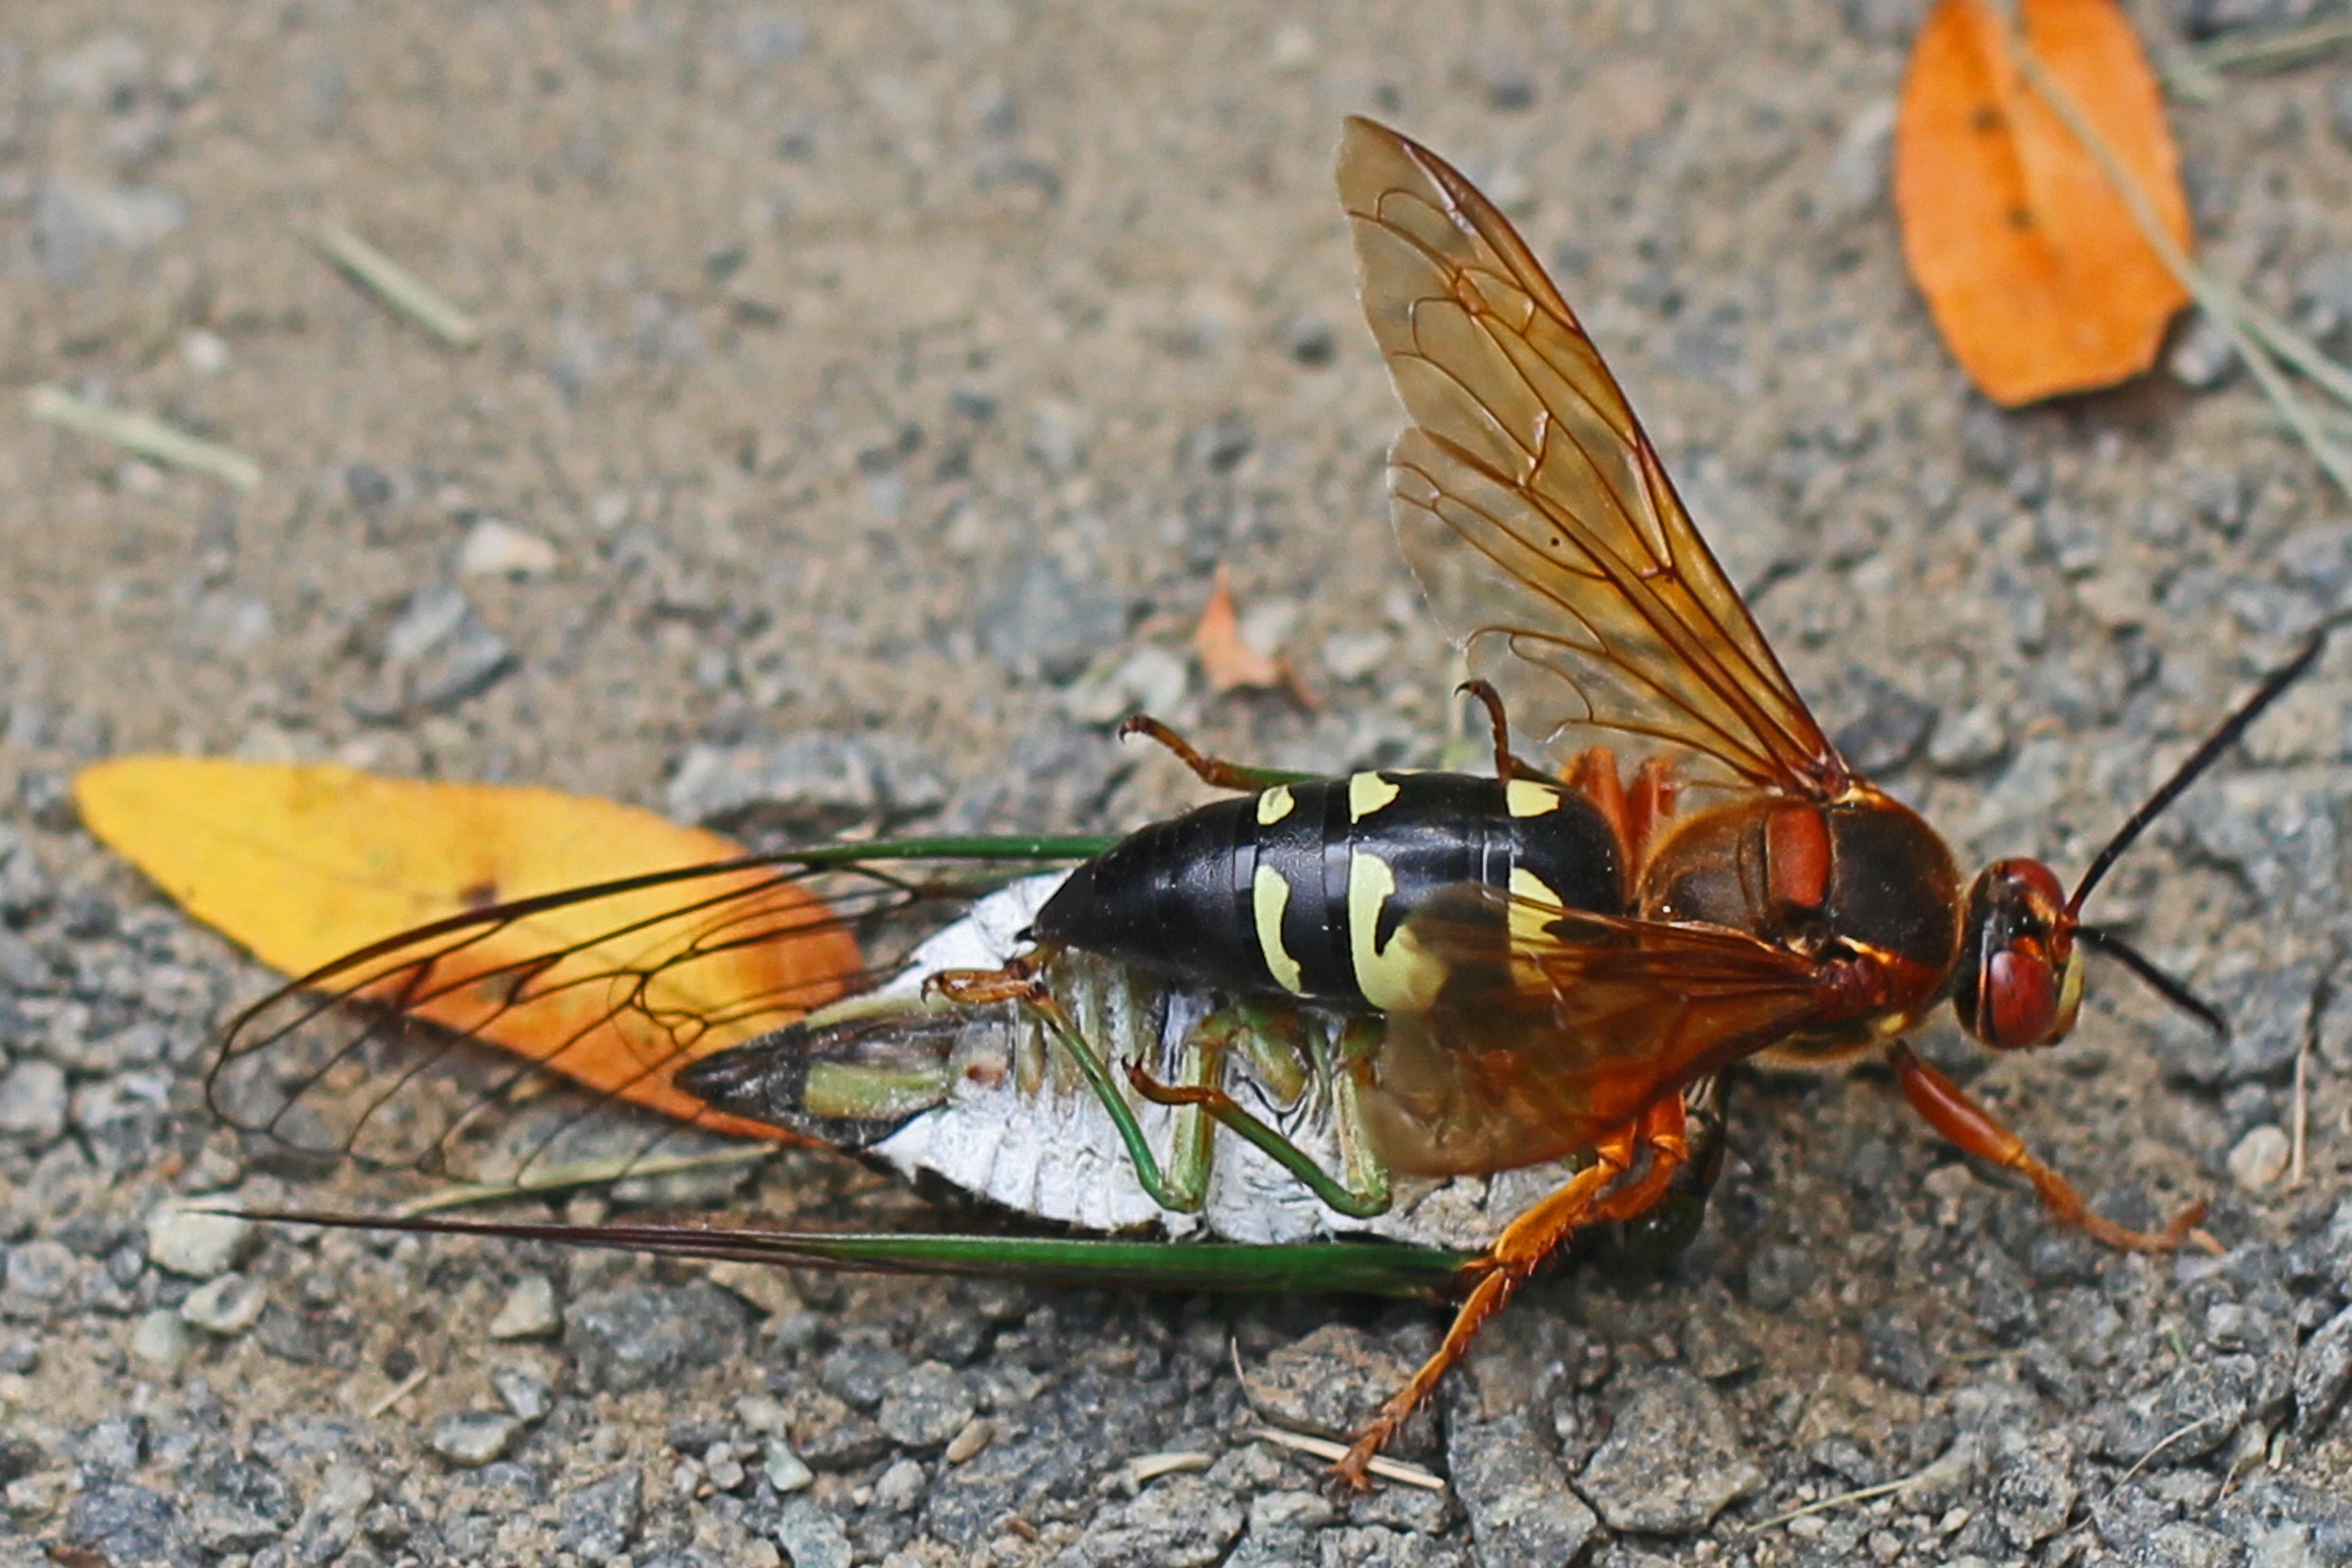 locust vs cicada